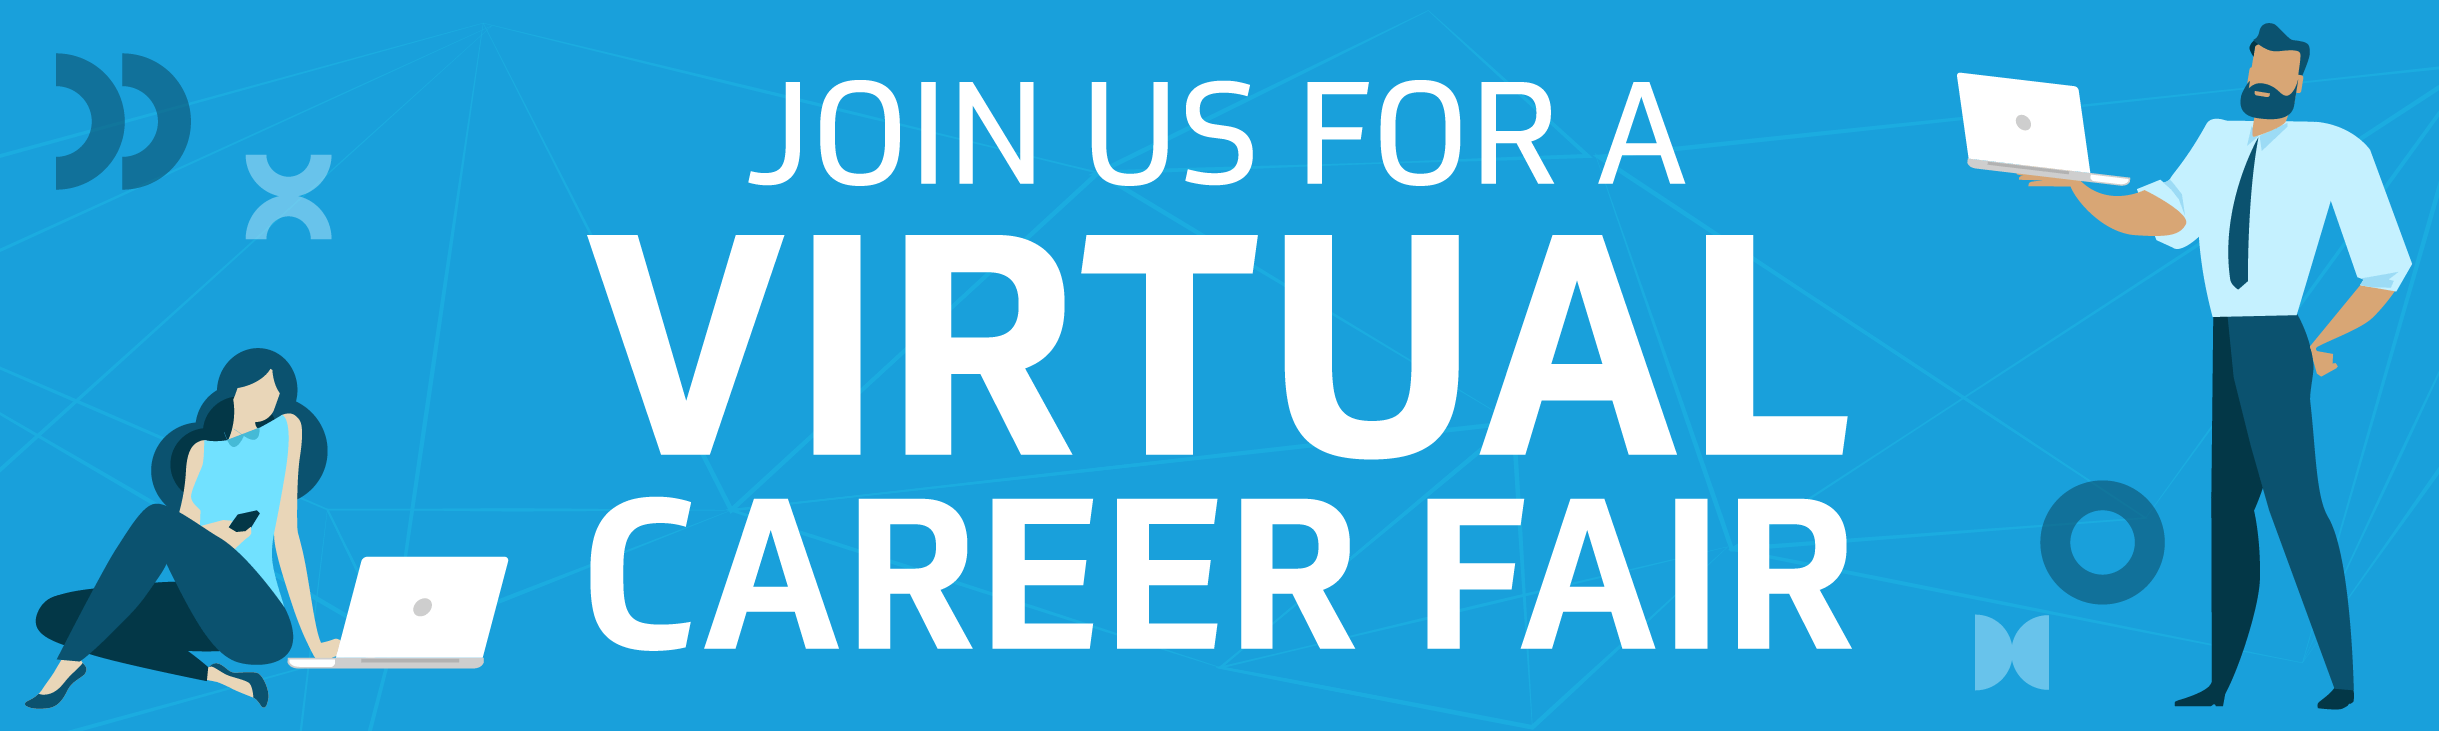 Join Us for a Virtual Career Fair